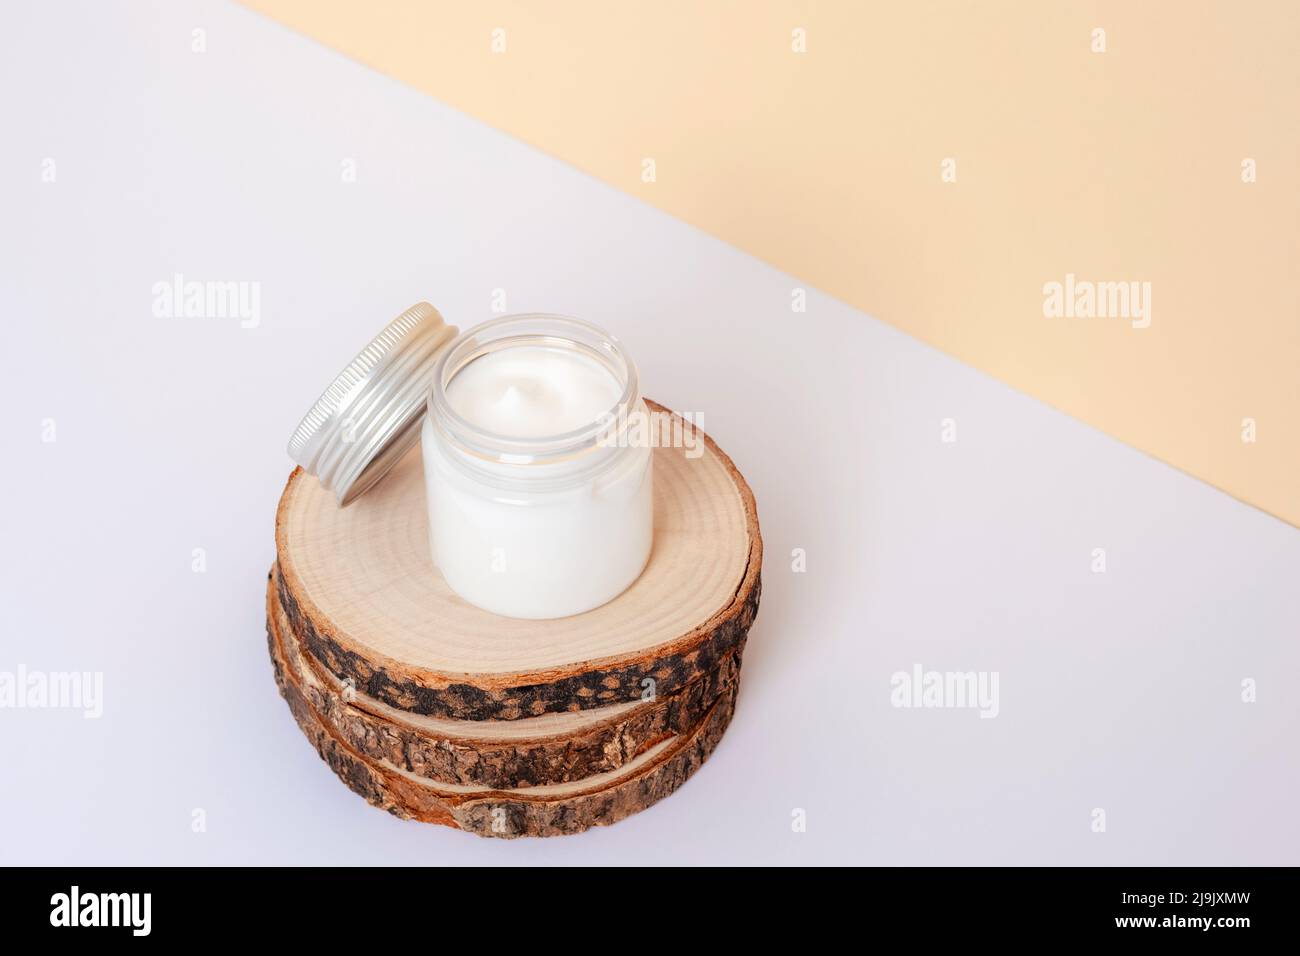 Pot crème sur support en bois sur fond blanc et beige. Concept de cosmétiques naturels. Gros plan. Banque D'Images